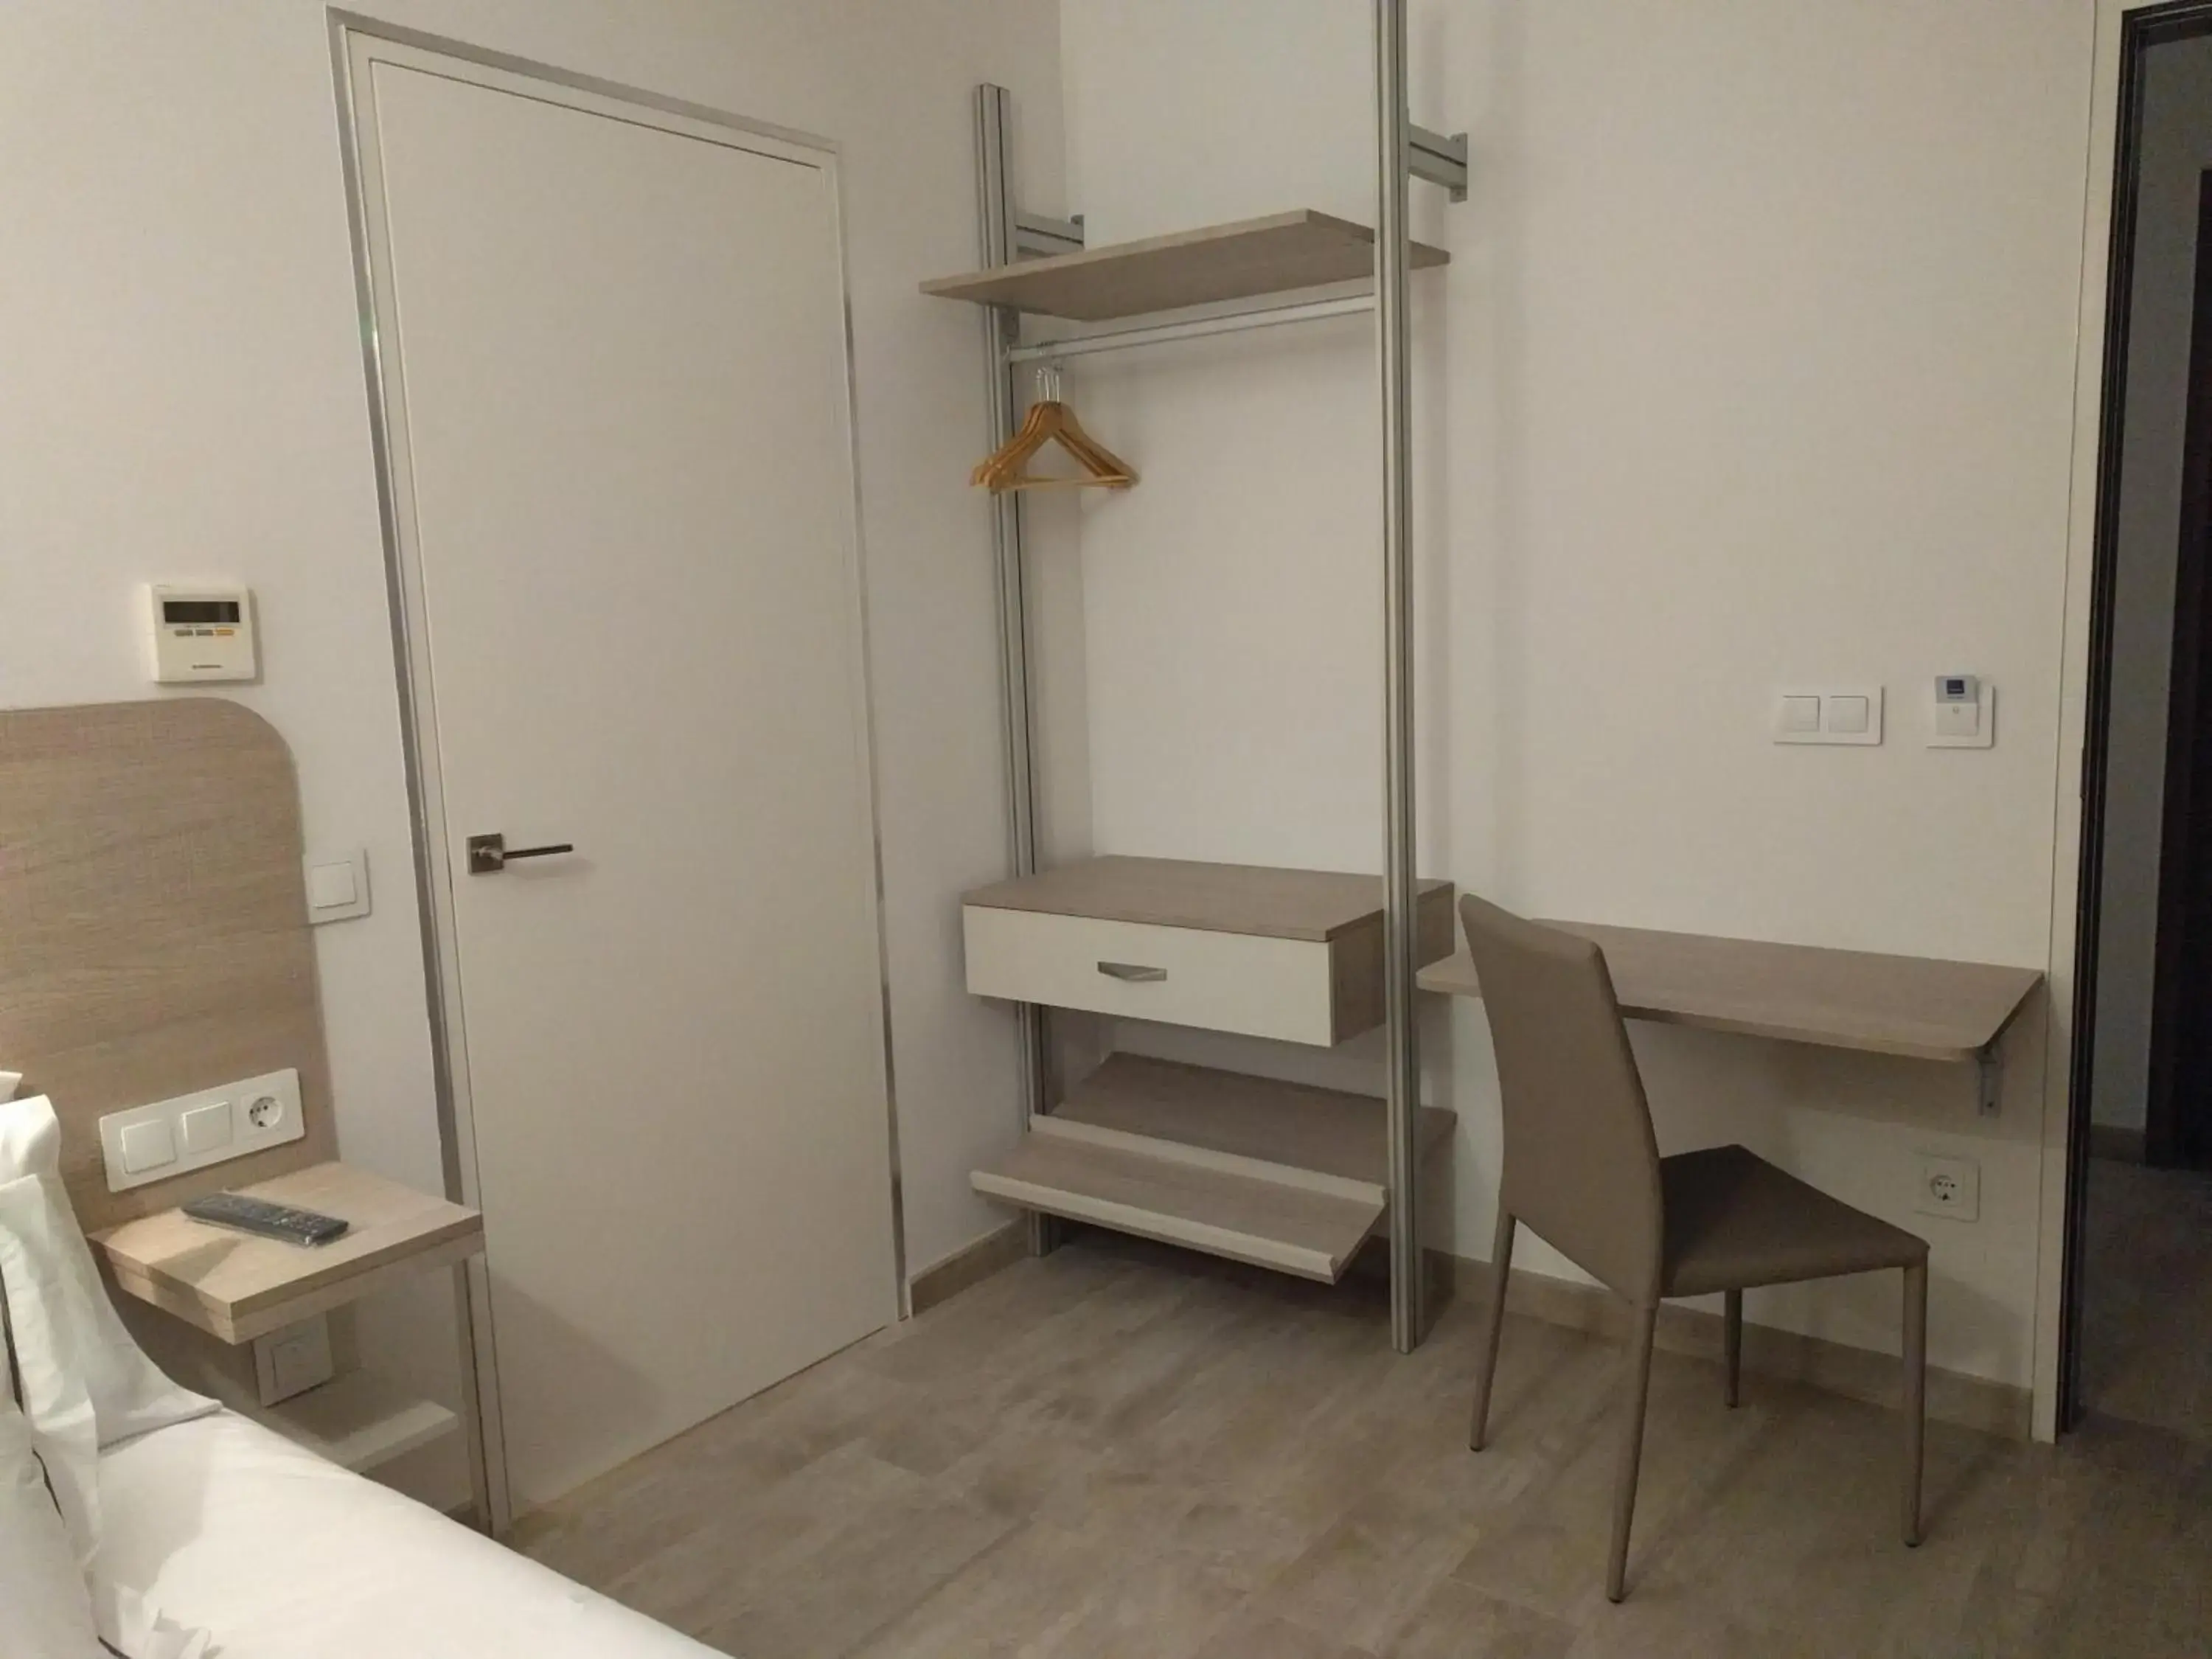 Bedroom, Bathroom in Patios del Orfebre